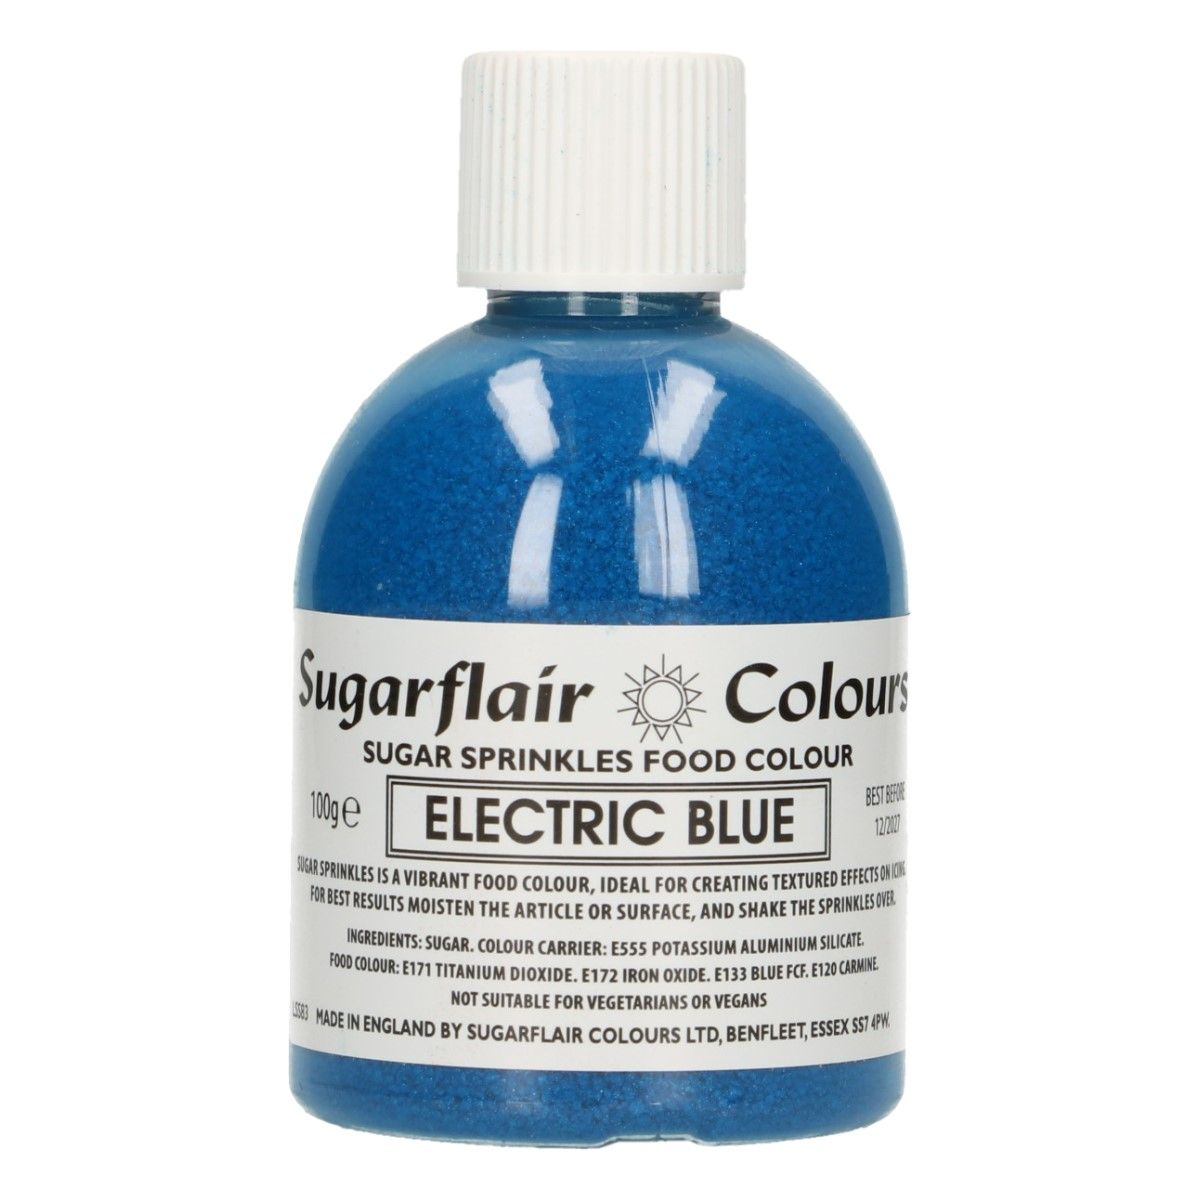 SUGARFLAIR poussières de sucre  -ELECTRIC BLUE- 100G